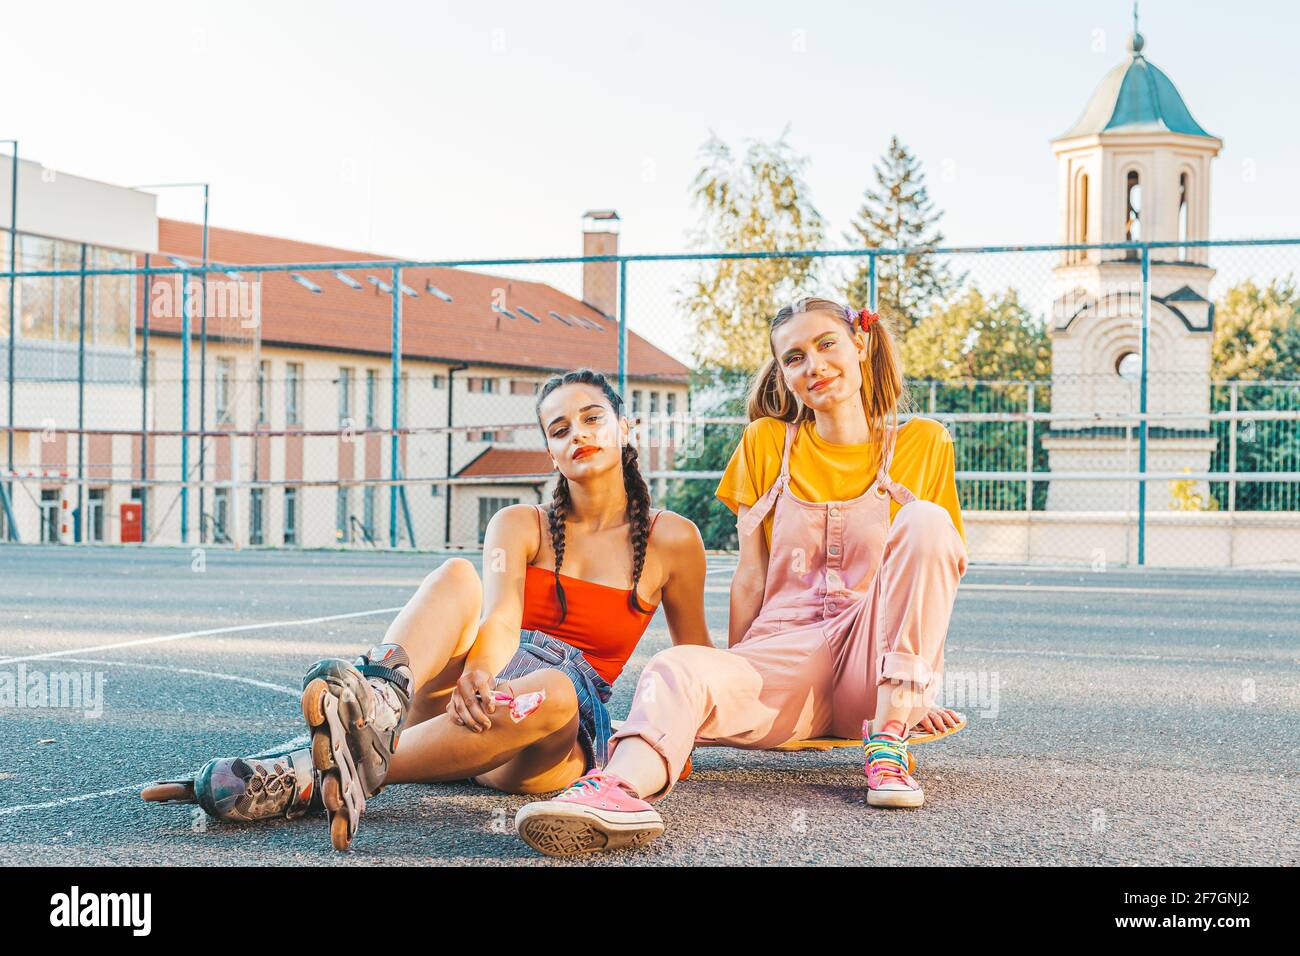 Deux filles adolescentes, amis en vêtements colorés avec patins à roulettes et planche à roulettes. Style urbain Banque D'Images